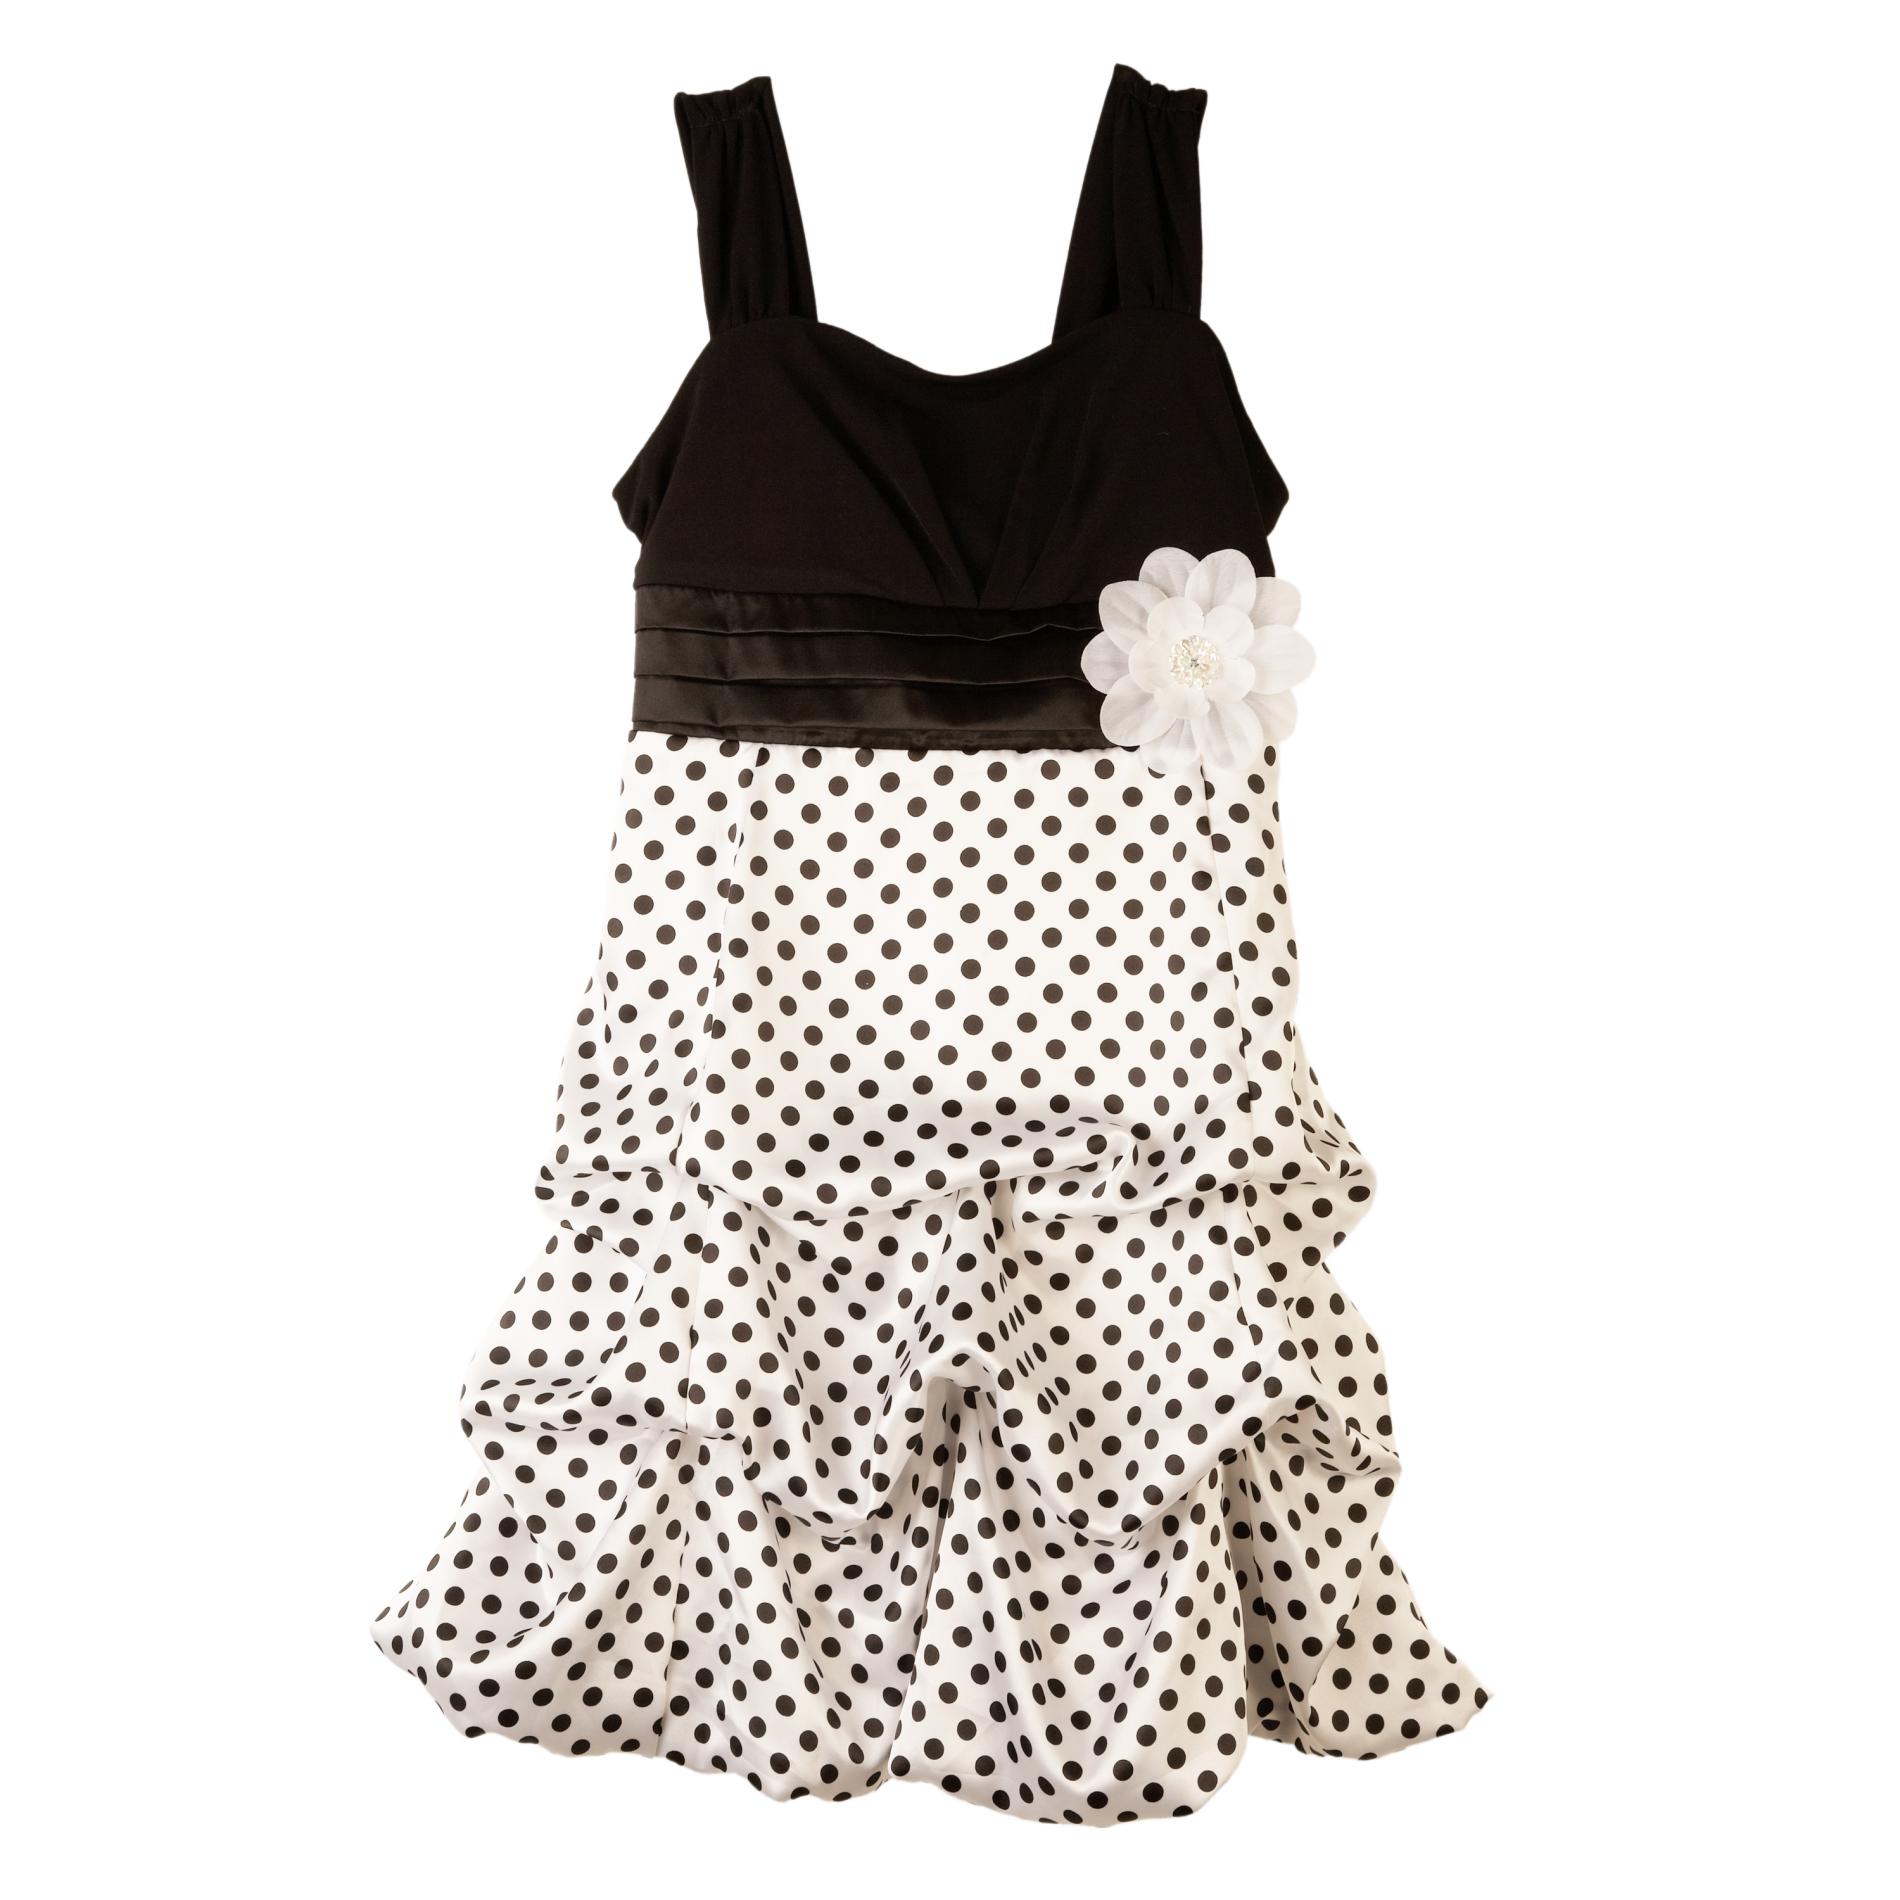 Amy's Closet Girl's Sleeveless Party Dress - Polka Dots